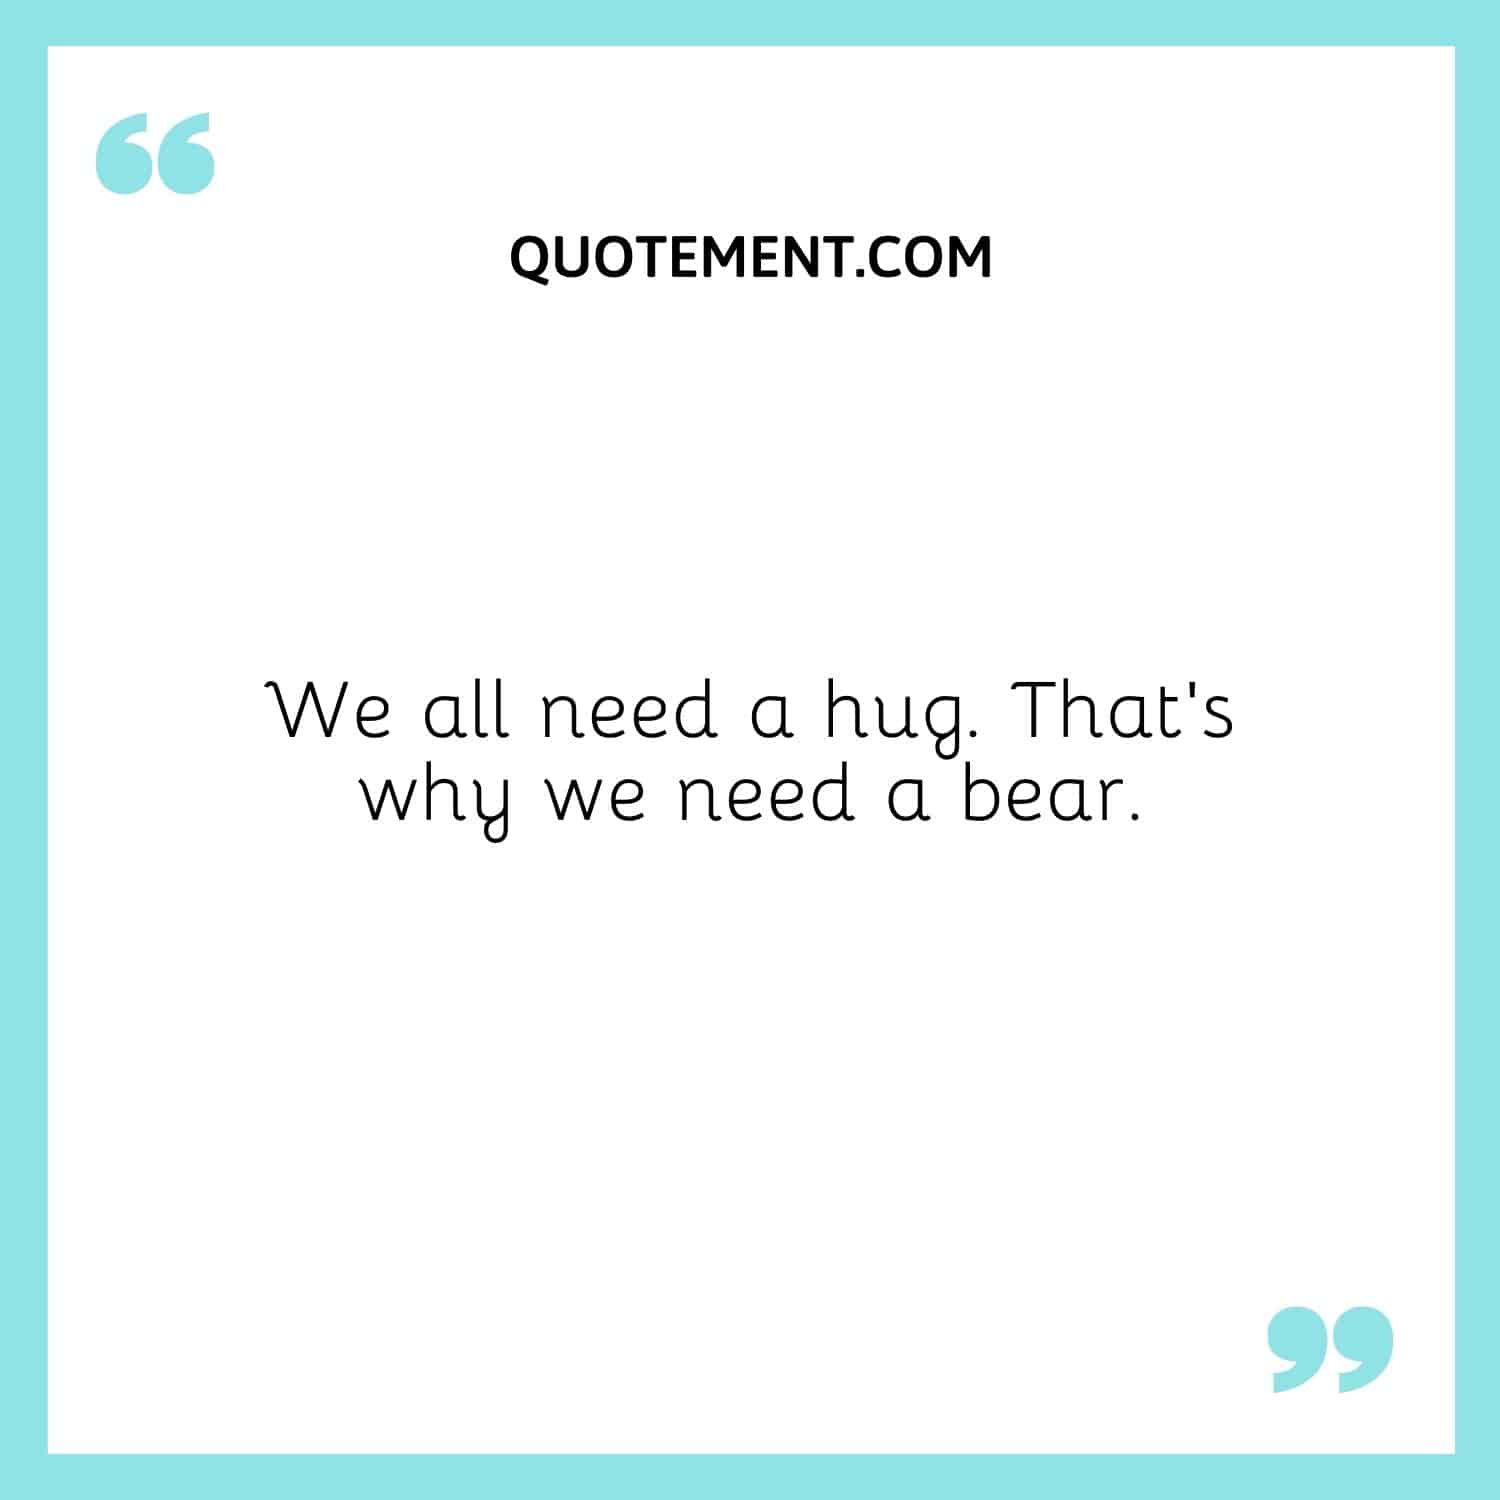 We all need a hug